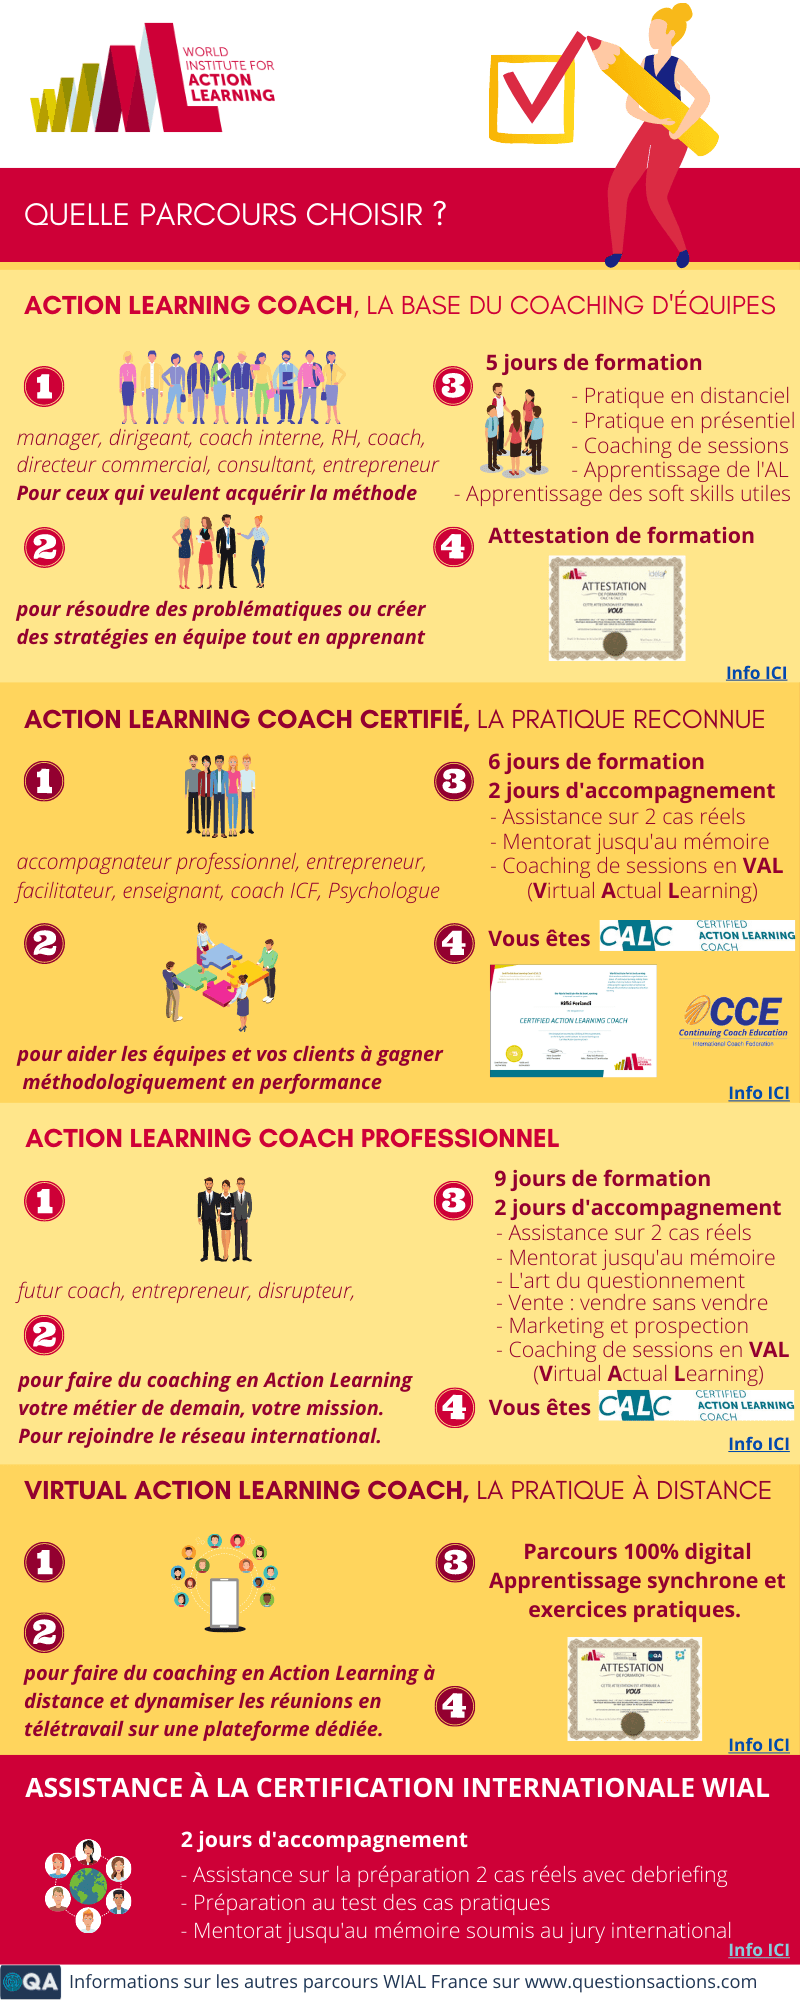 Les descriptions des formations certifiantes en Action Learning .